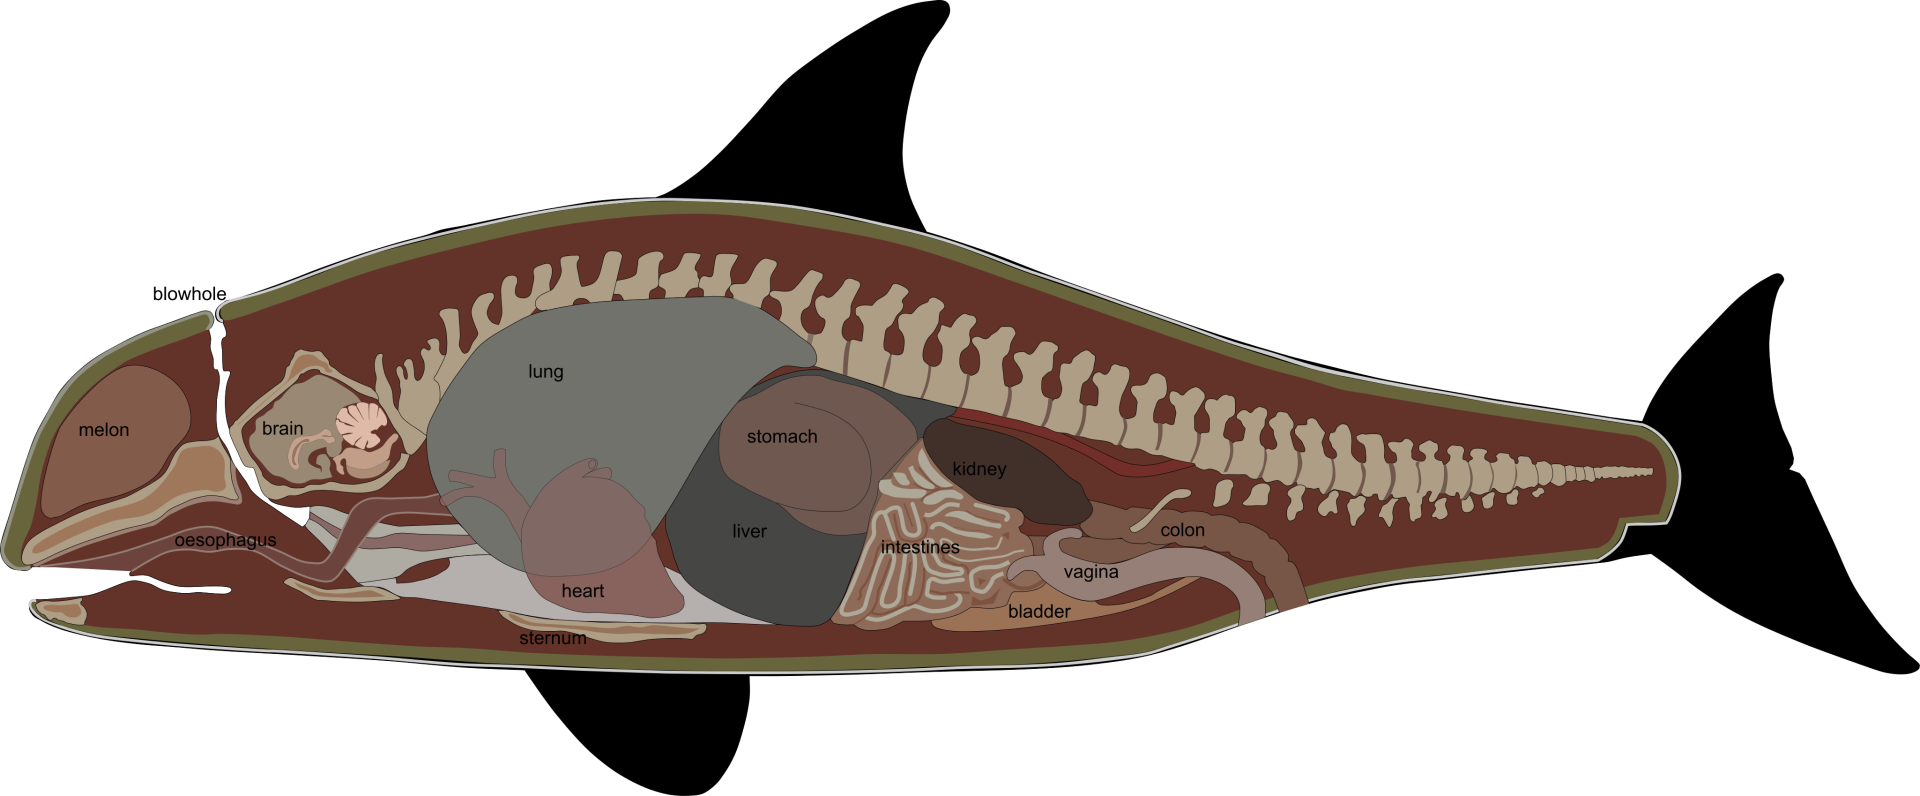 鲸鱼有四个胃,每个胃中都有大量的胃液.